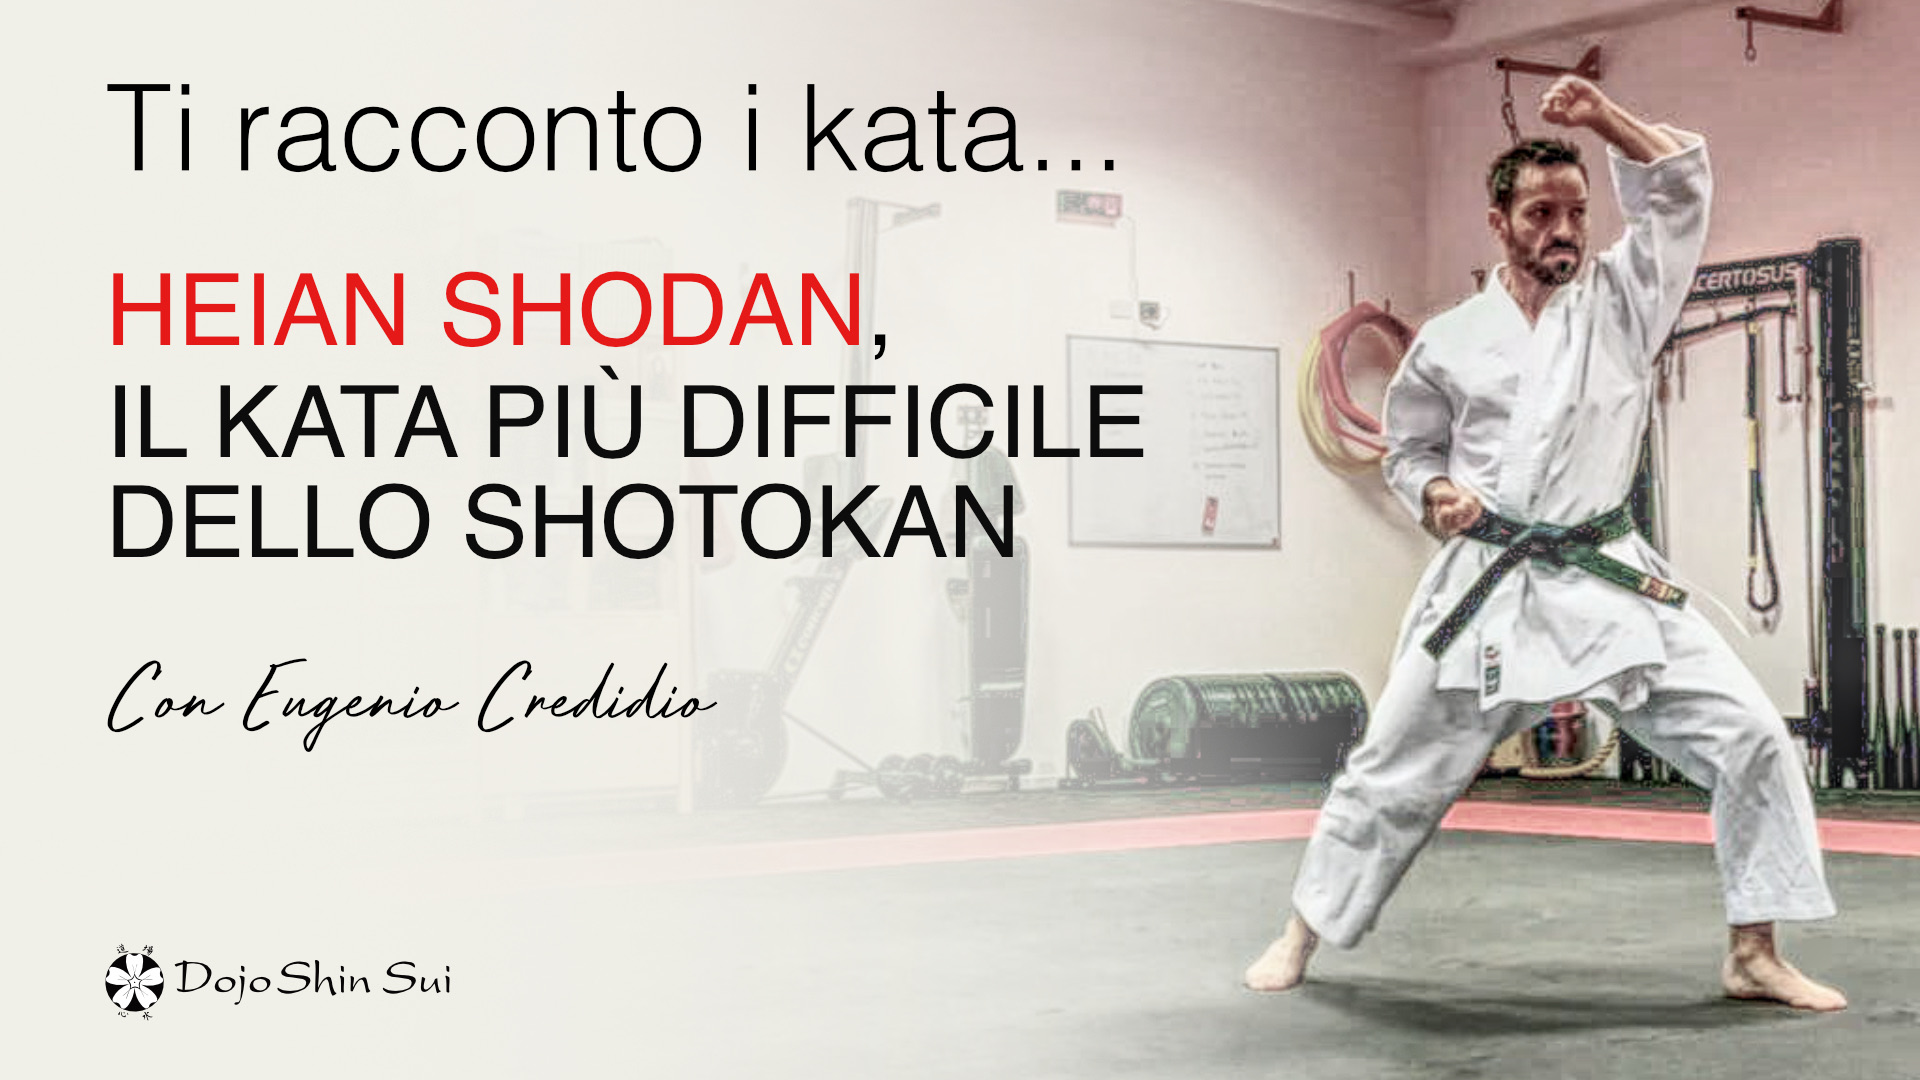 Eugenio Credidio ti racconta Heian Shodan, il kata più difficile dello Shotokan